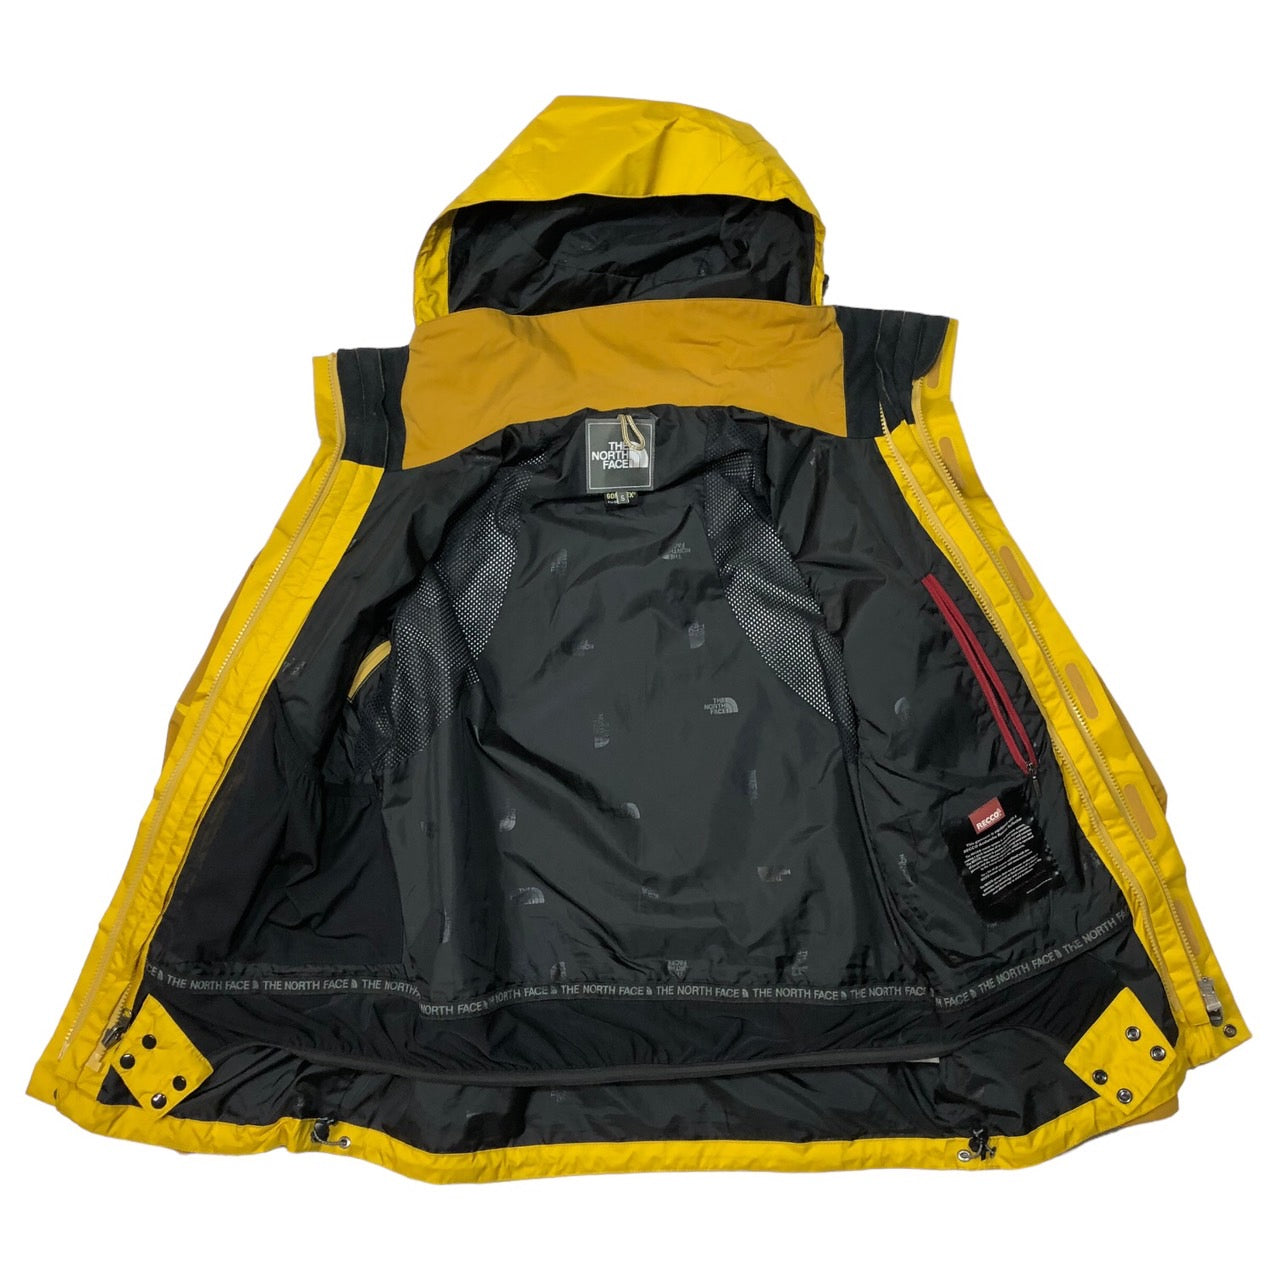 THE NORTH FACE(ザノースフェイス) GORE-TEX EG jacket/イージージャケット/マウンテンパーカー NS15808 S イエロー×ブラック